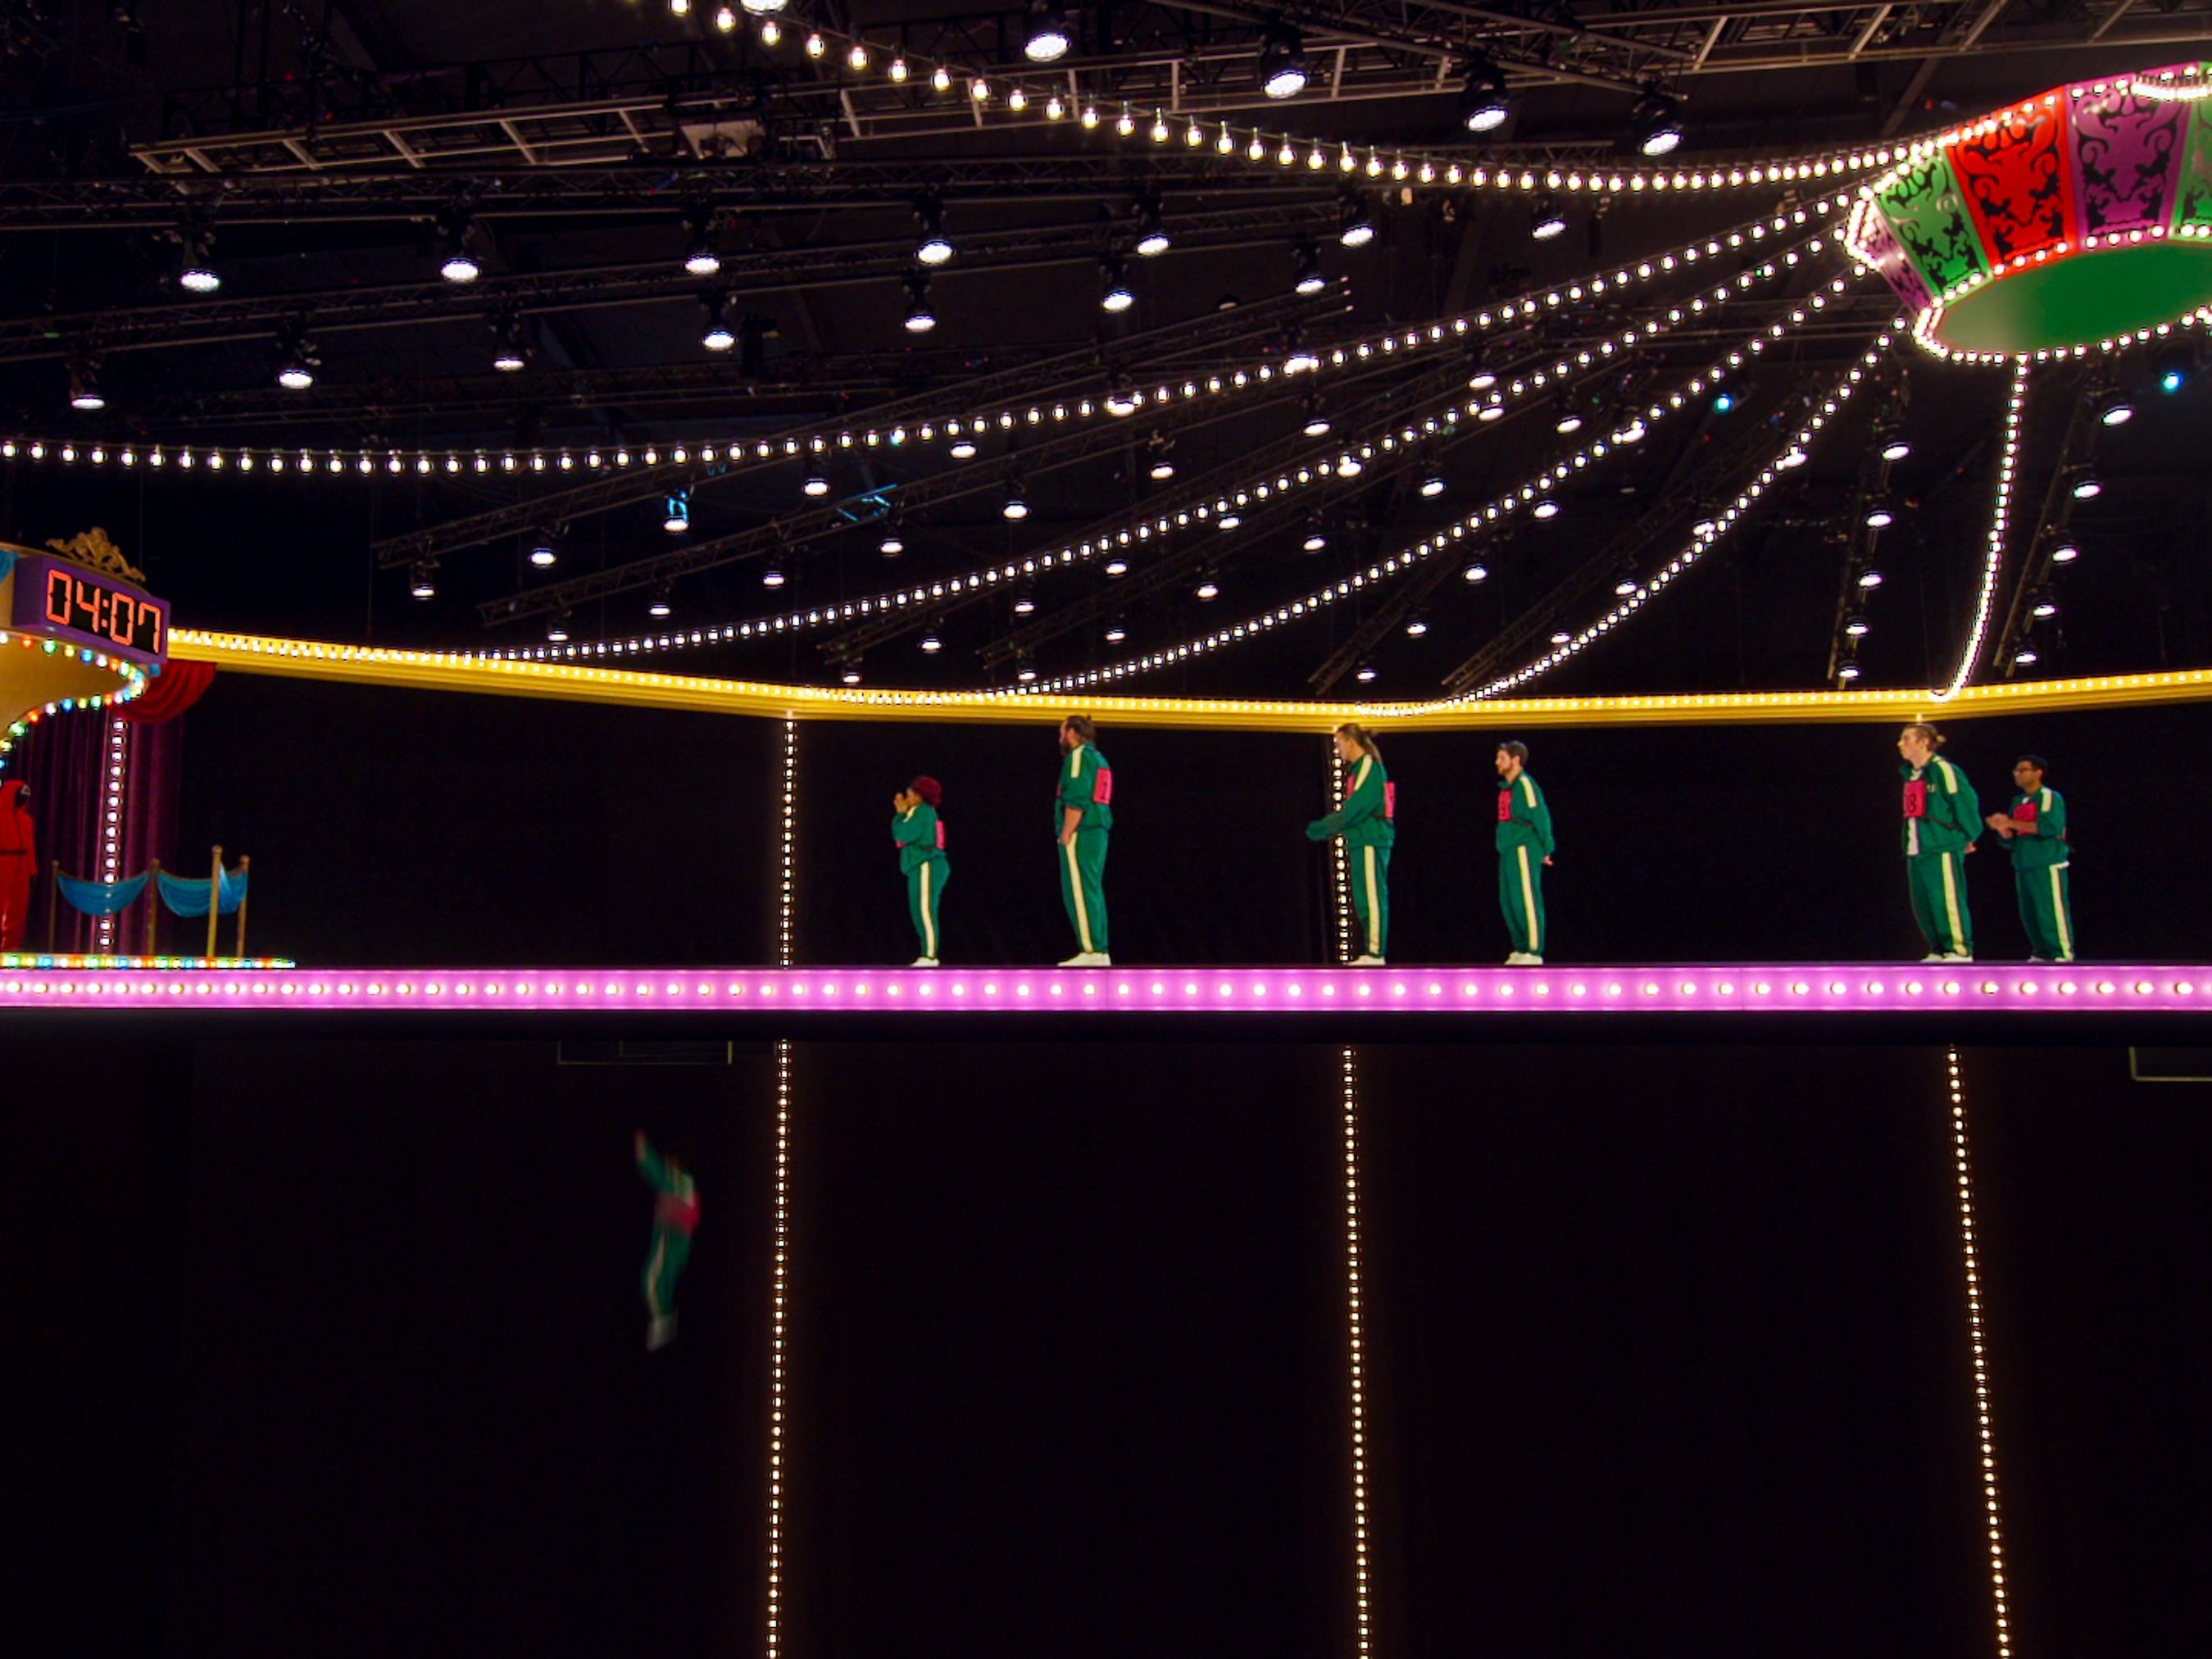 Die Glasbrücke in Squid Game ist die Herausforderung, eine hängende, hell erleuchtete Brücke in einem Zirkuszelt-ähnlichen Set